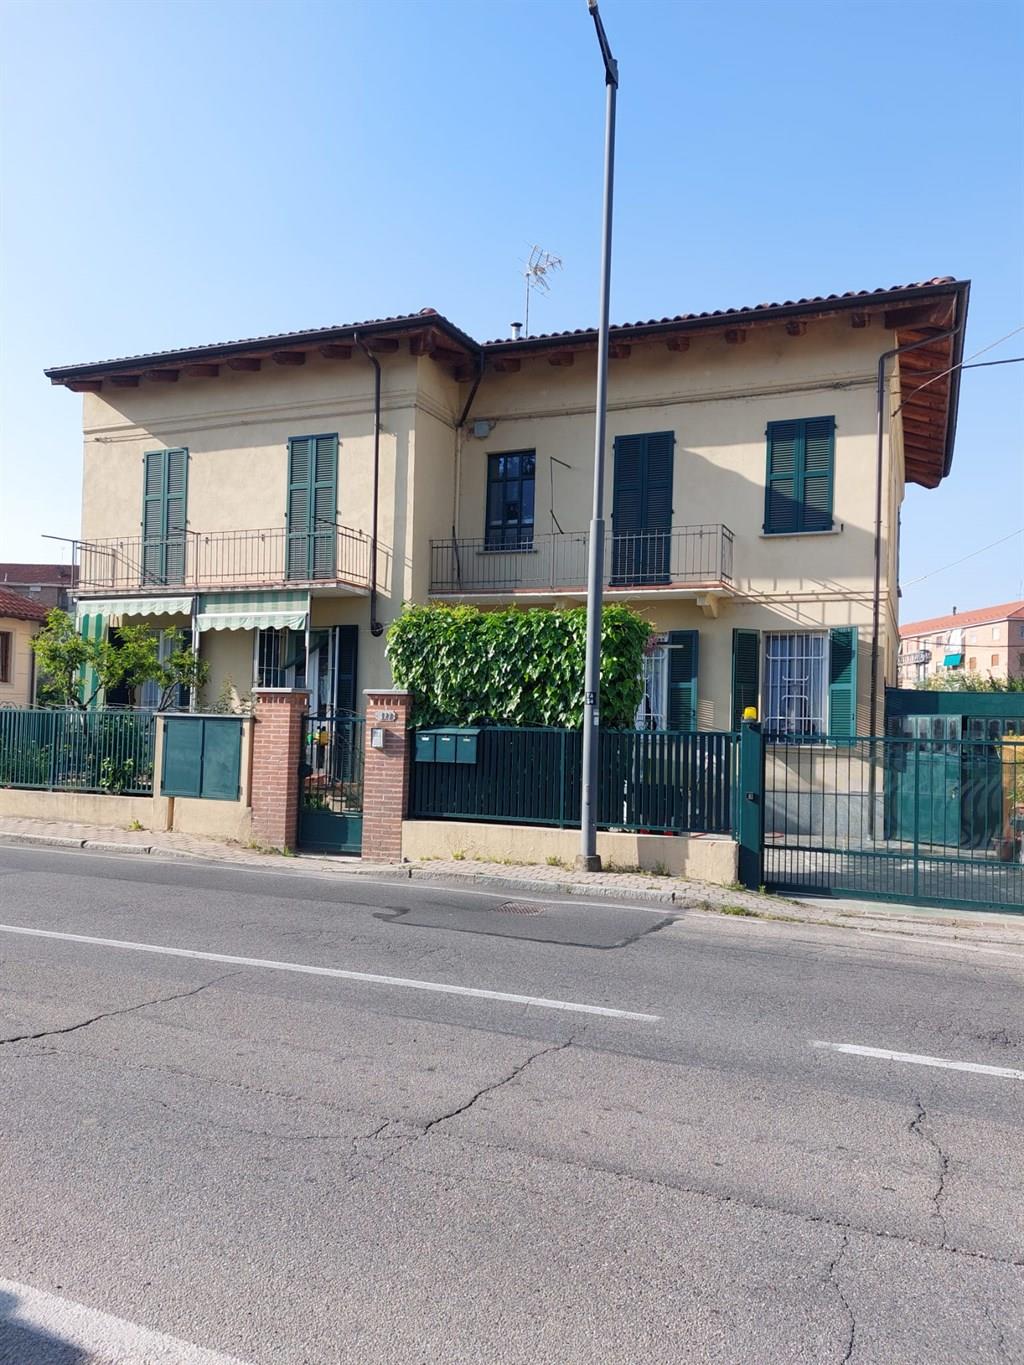 Vendita Casa Indipendente Casa/Villa Asti corso venezia 129 486368